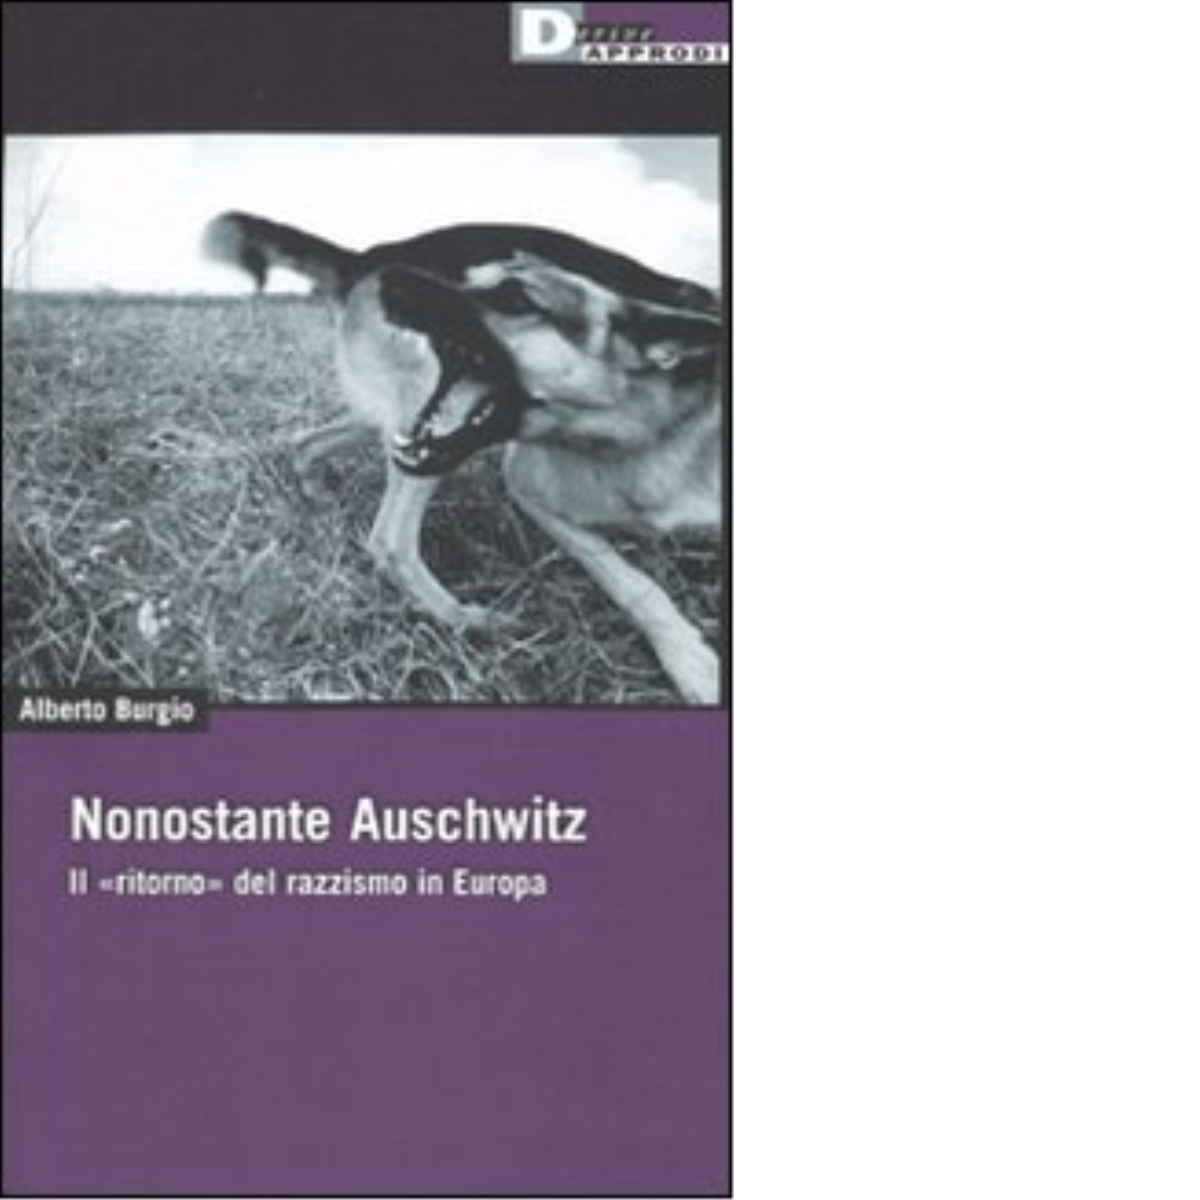 NONOSTANTE AUSCHWITZ. di ALBERTO BURGIO - DeriveApprodi editore, 2010